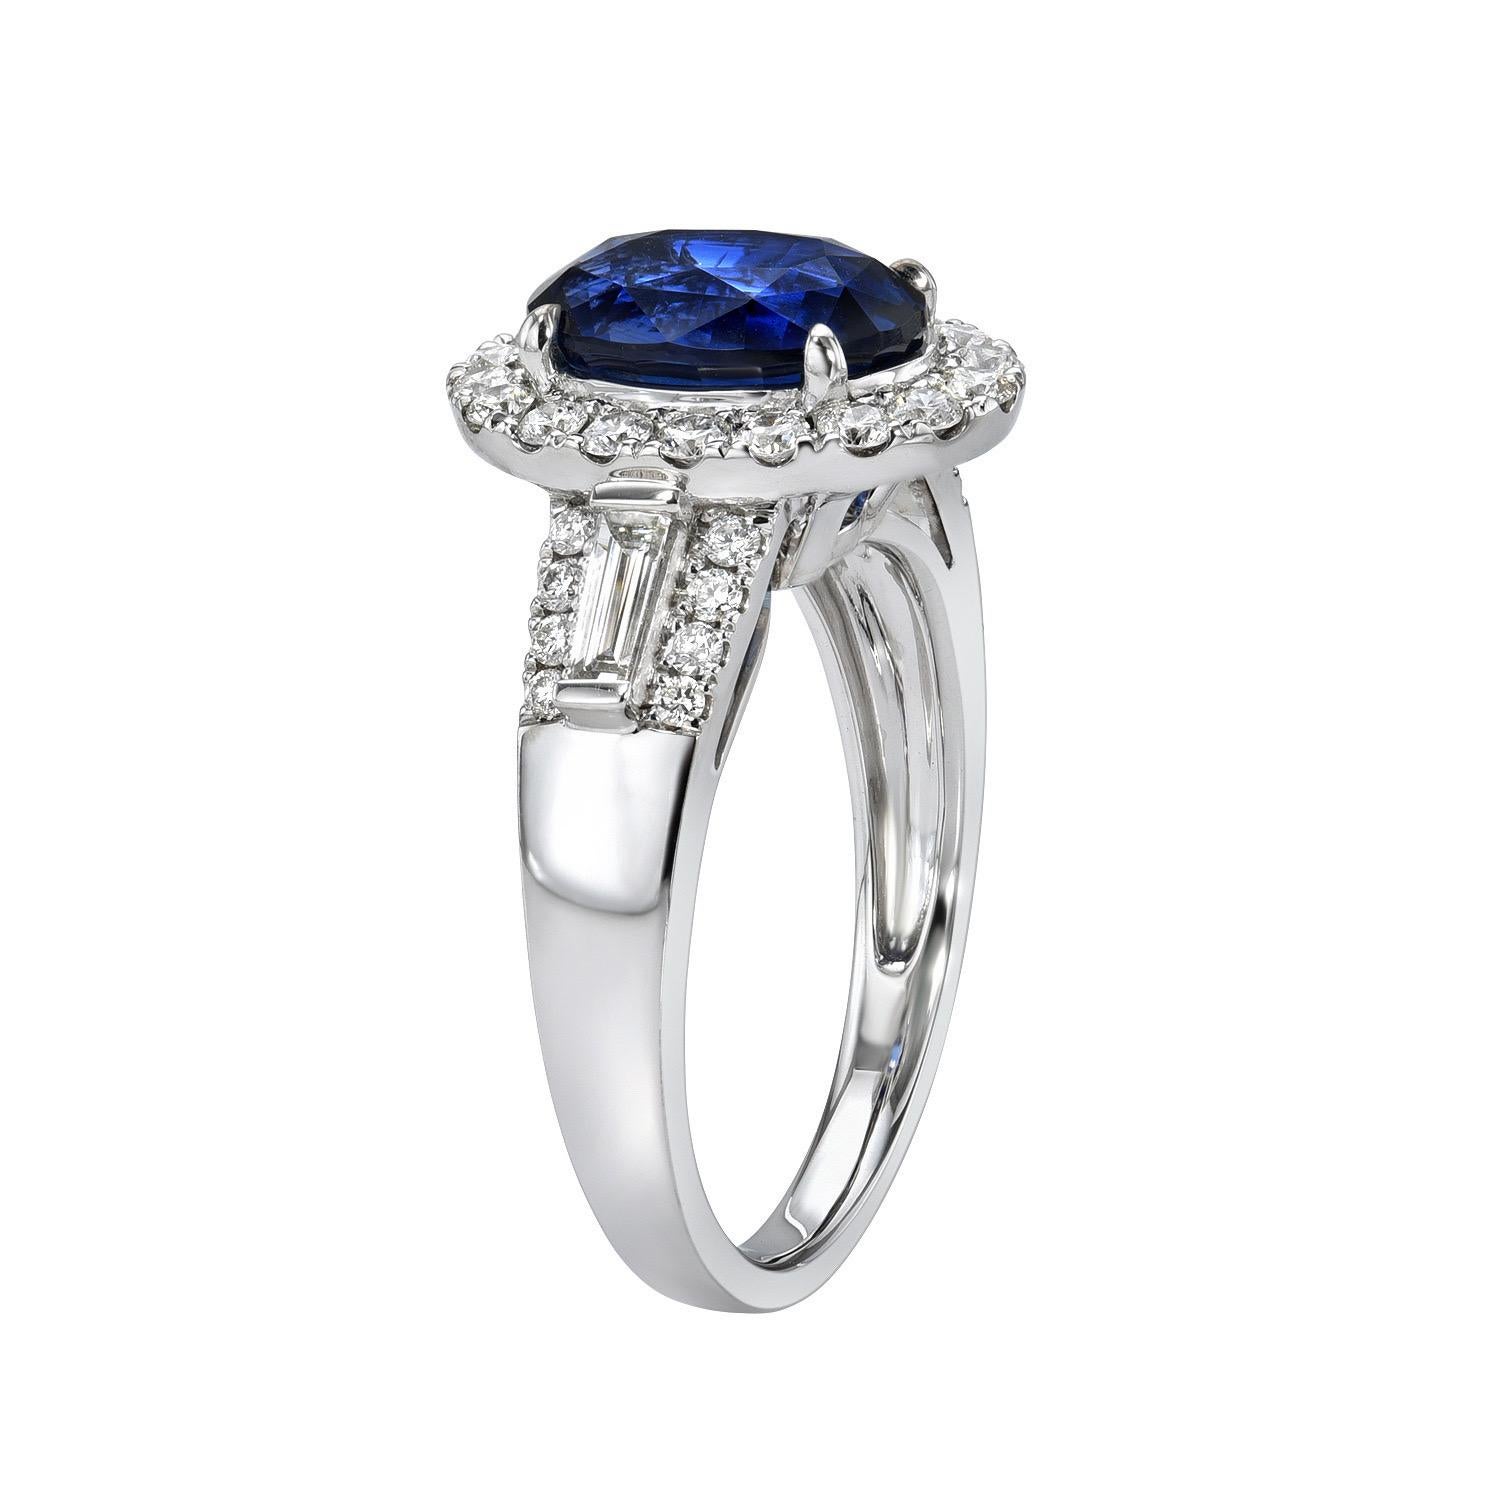 Merveilleuse bague ovale en saphir bleu royal de 3,05 carats, en or blanc 18 carats, ornée d'une paire de diamants baguettes de 0,20 carat total G-H/VS, et d'un total de 0,52 carat de diamants ronds de taille brillant.
Bague taille 6.5. Le